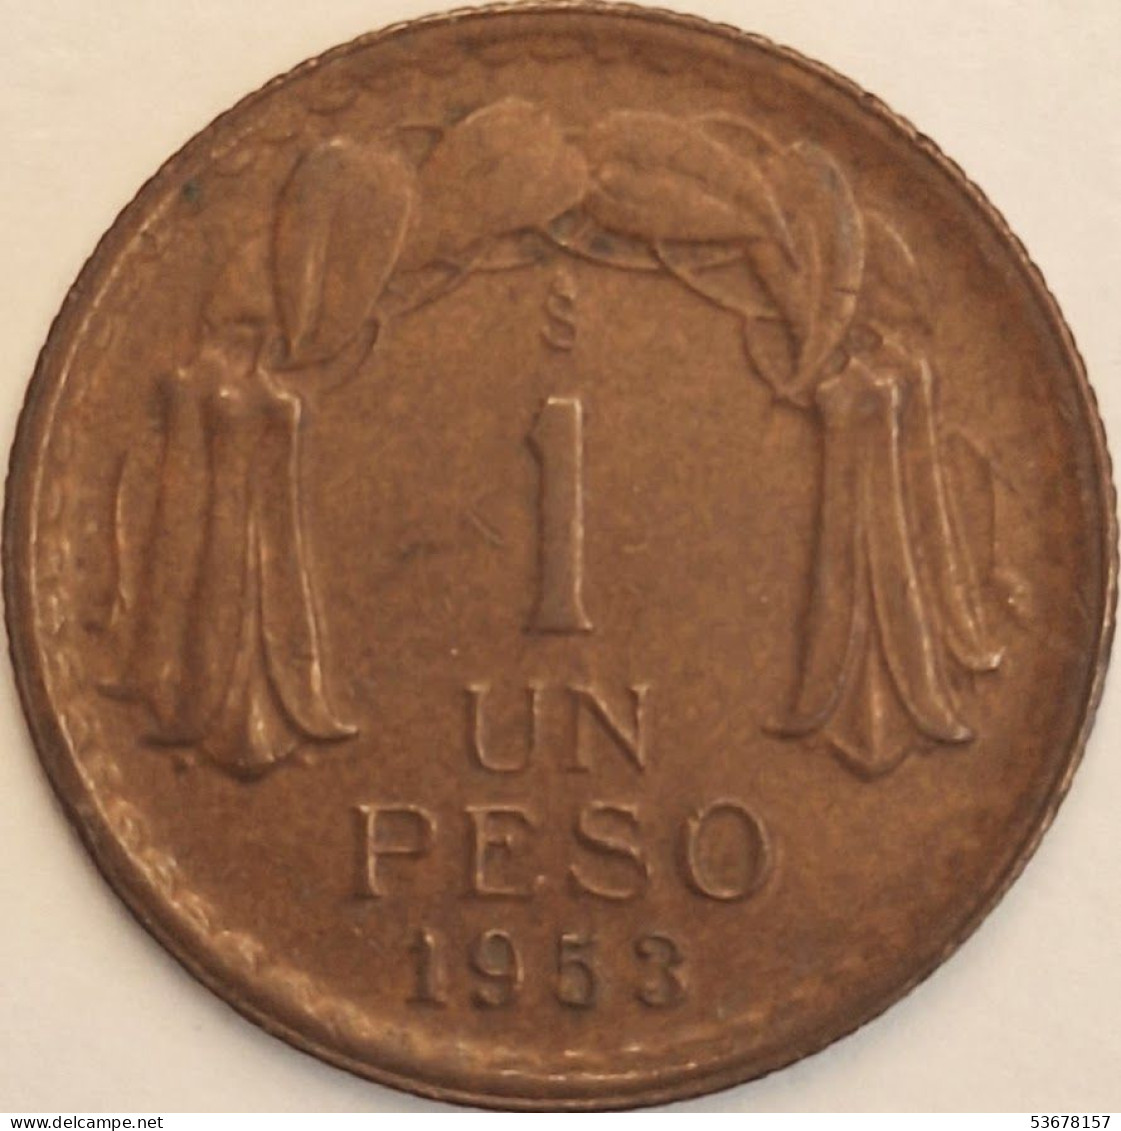 Chile - Peso 1953, KM# 179 (#3423) - Chili